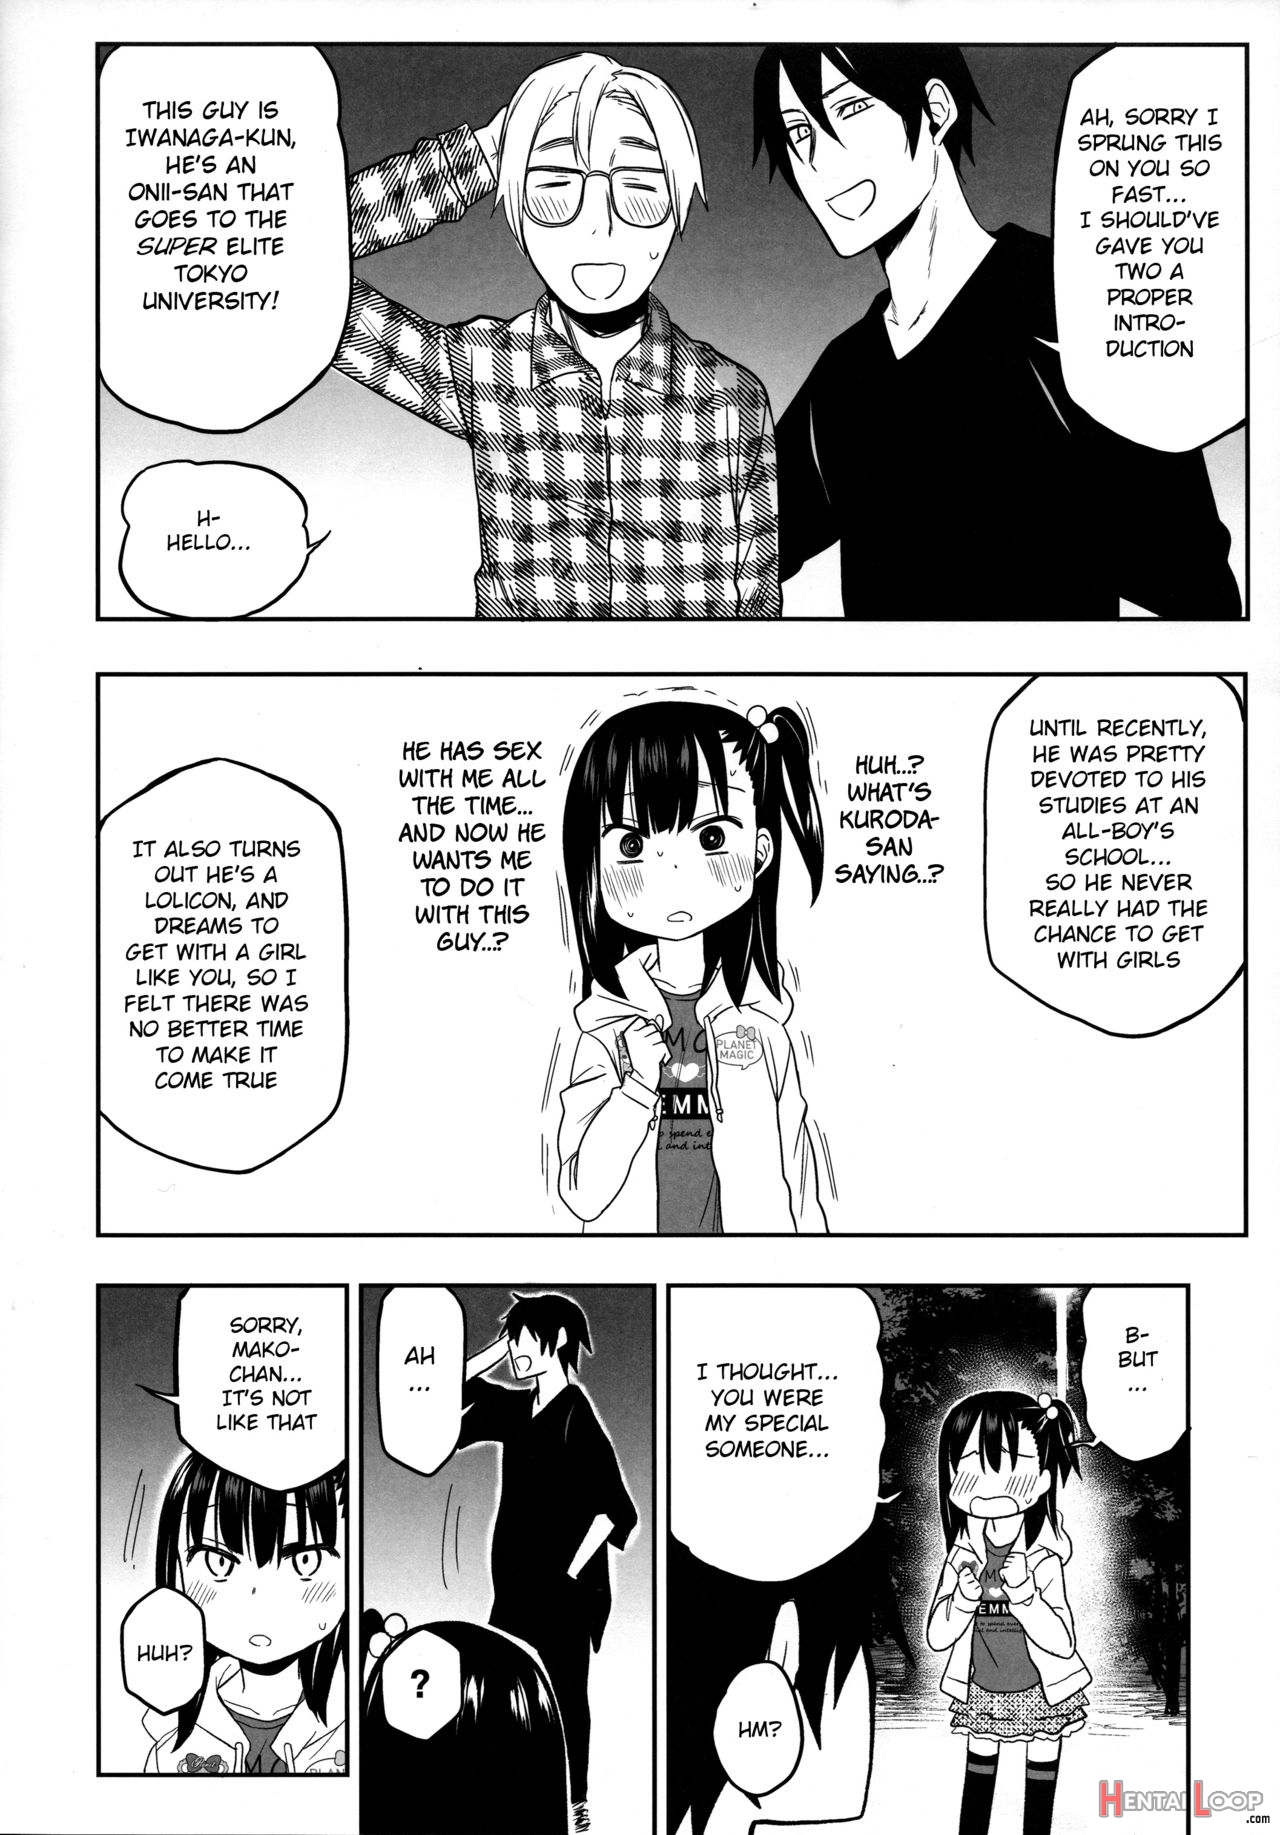 Tonari No Mako-chan Season 2 Vol. 2 page 6